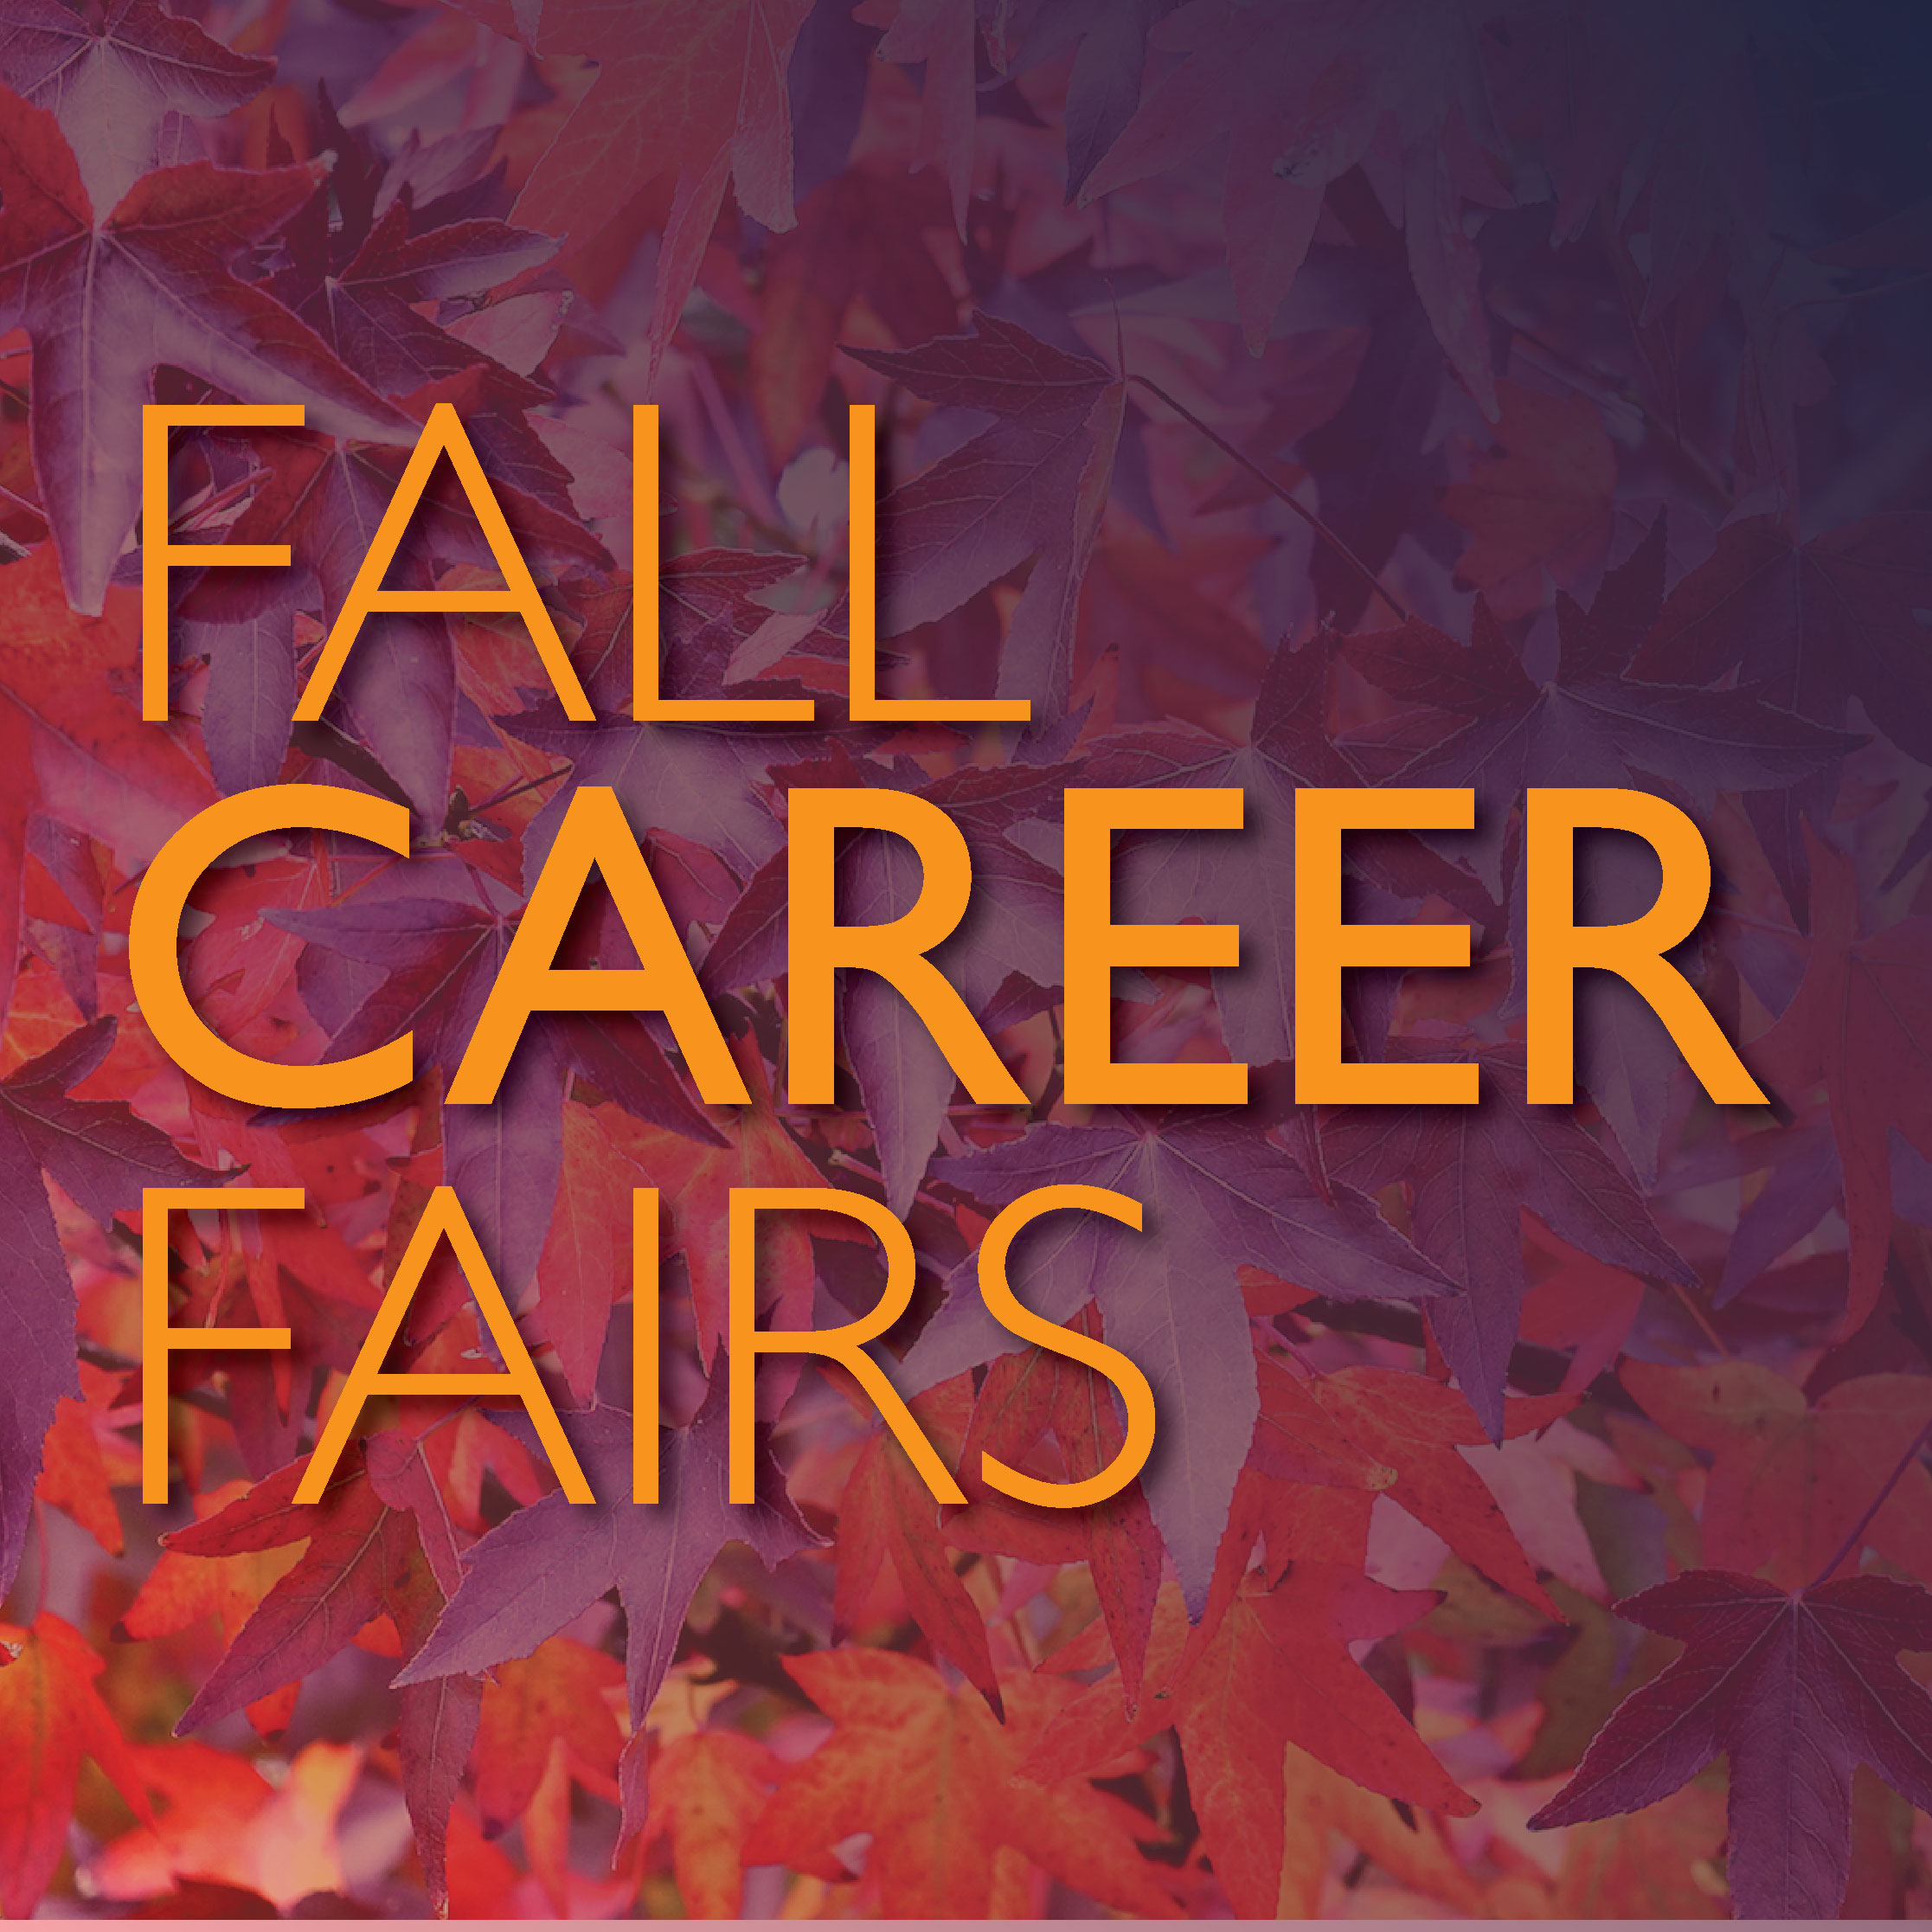 Fall Career Fairs